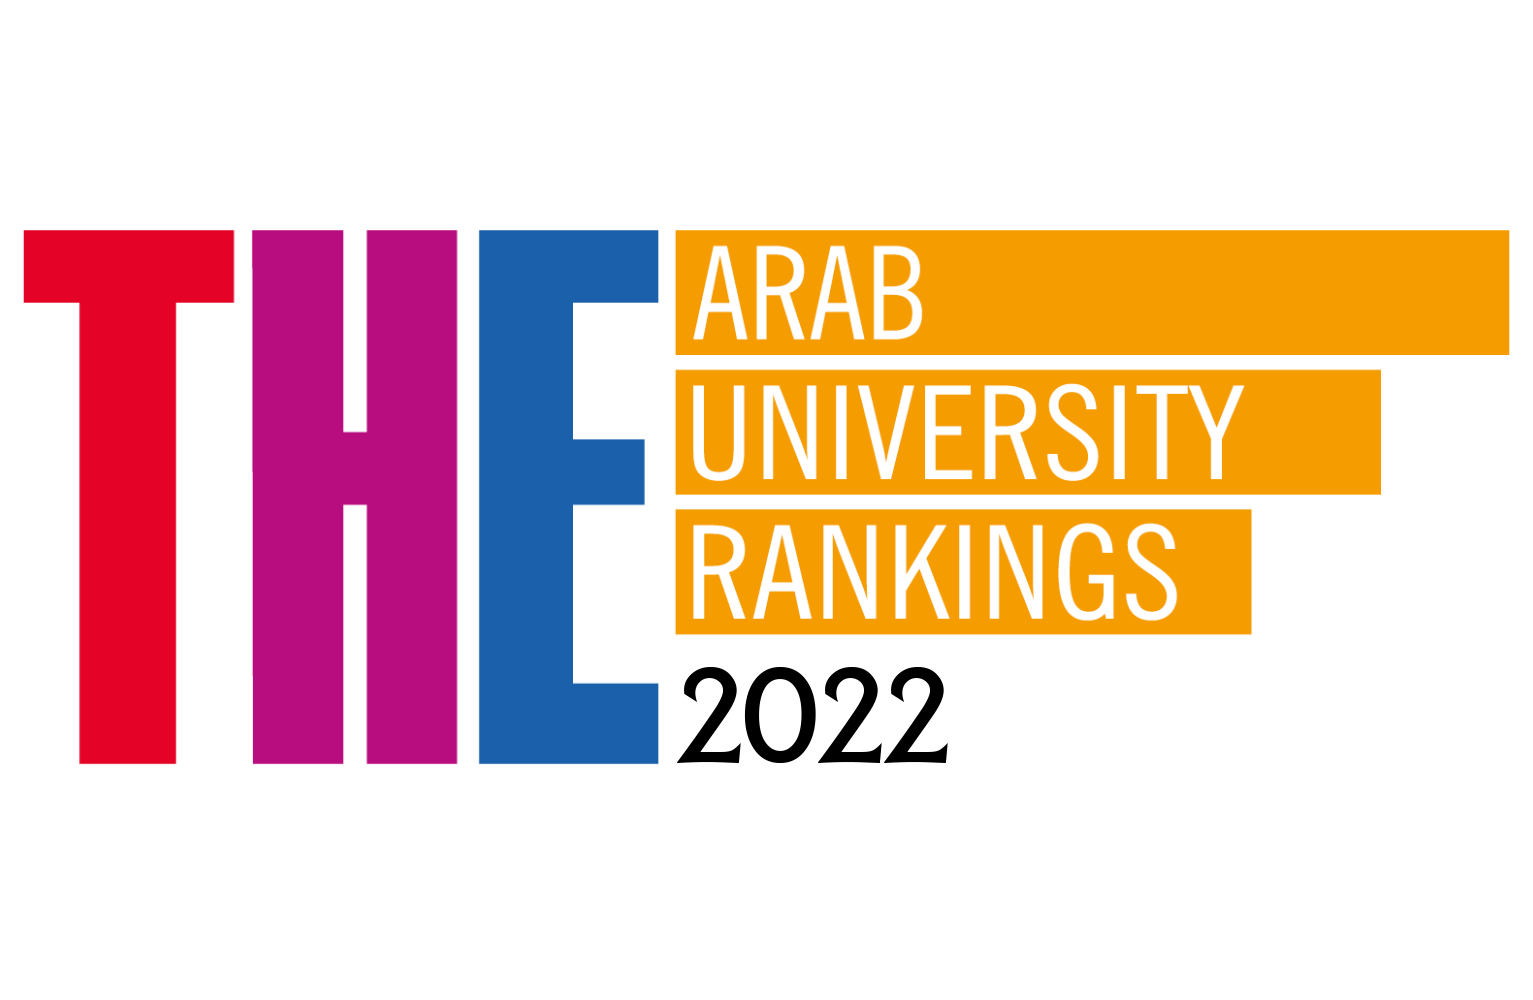 للعام الثاني على التوالي .. جامعة بنها ضمن أفضل 50 جامعة عربية طبقاً لتصنيف التايمز البريطاني لمؤسسات التعليم العالي